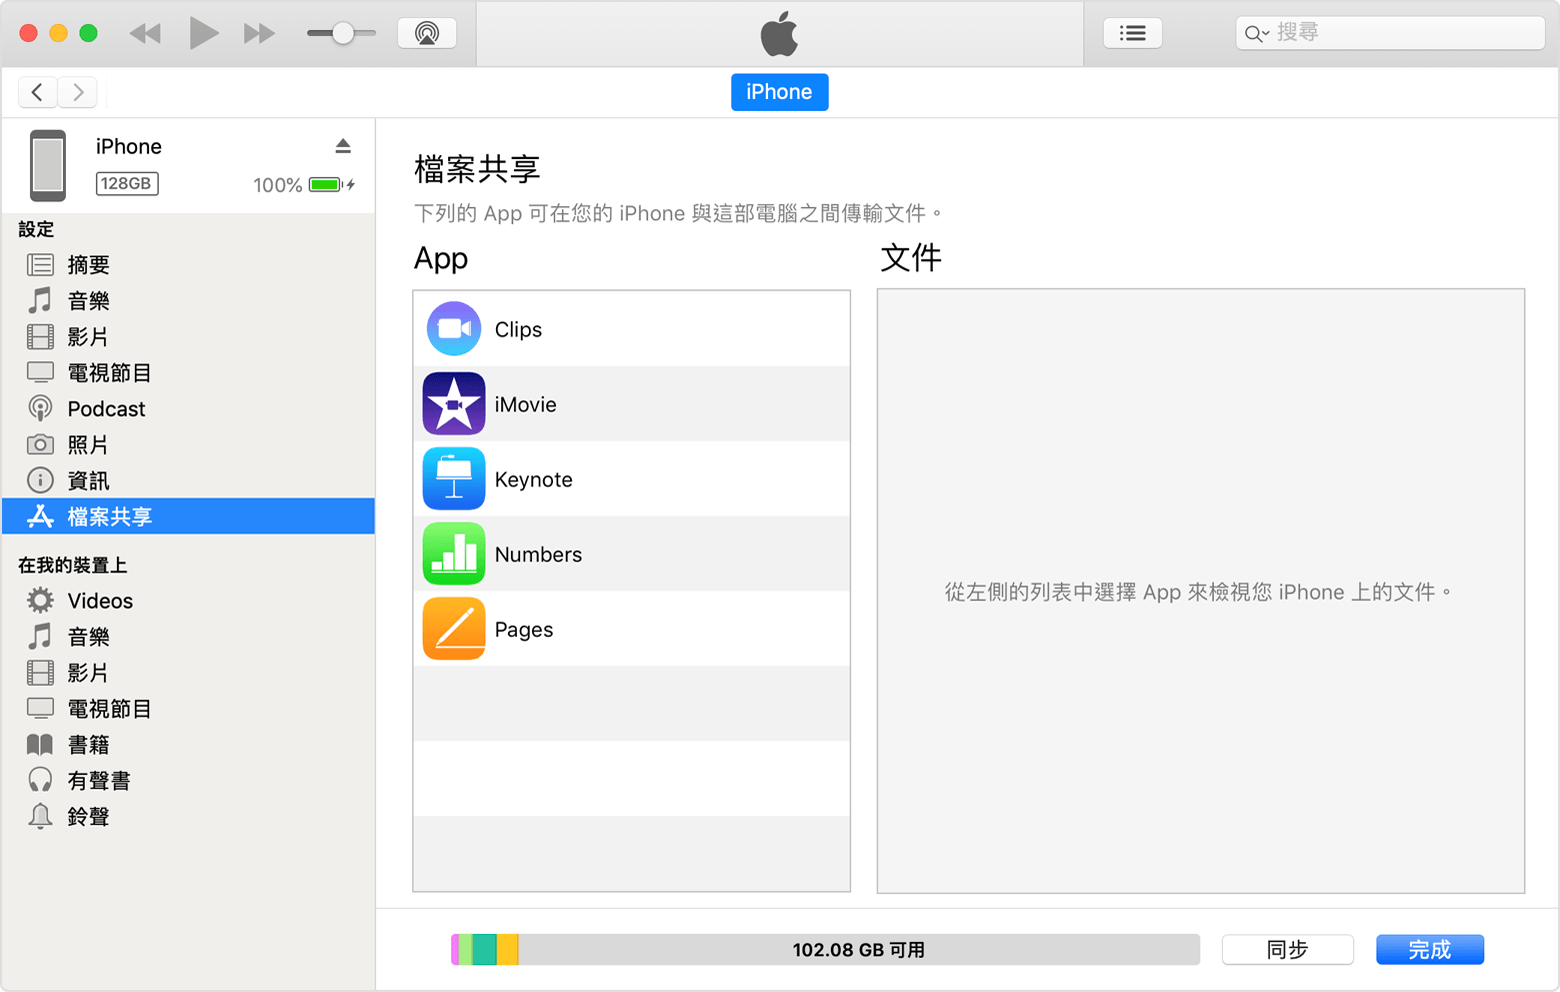 iTunes 視窗顯示 iPhone 已連線且已從列表中選取「檔案共享」。